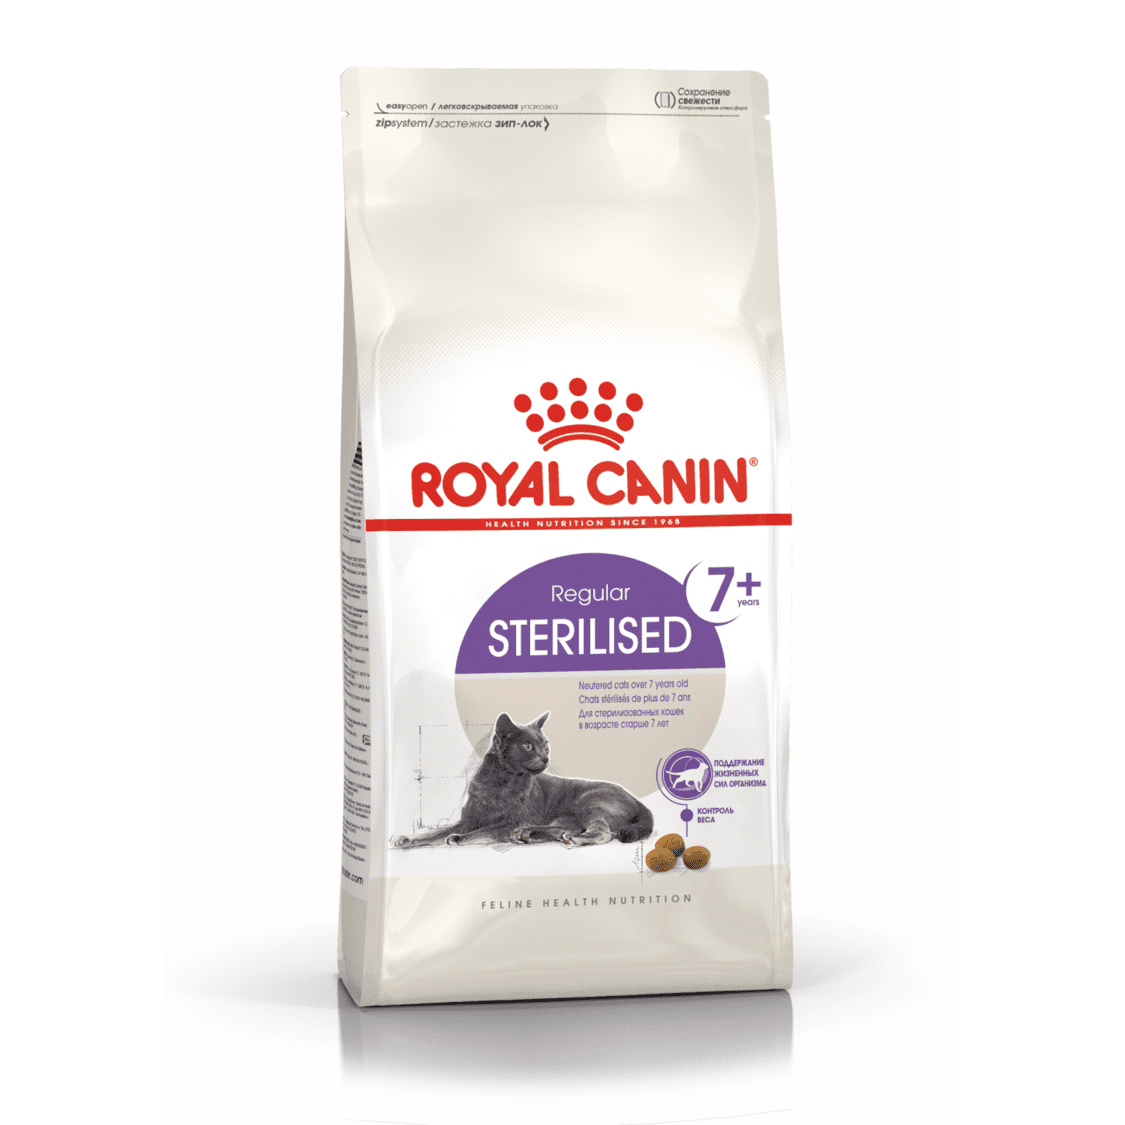 Royal Canin Royal Canin для пожилых кастрированных кошек (7-12 лет) (1,5 кг) royal canin royal canin для пожилых кастрированных кошек 7 12 лет 1 5 кг